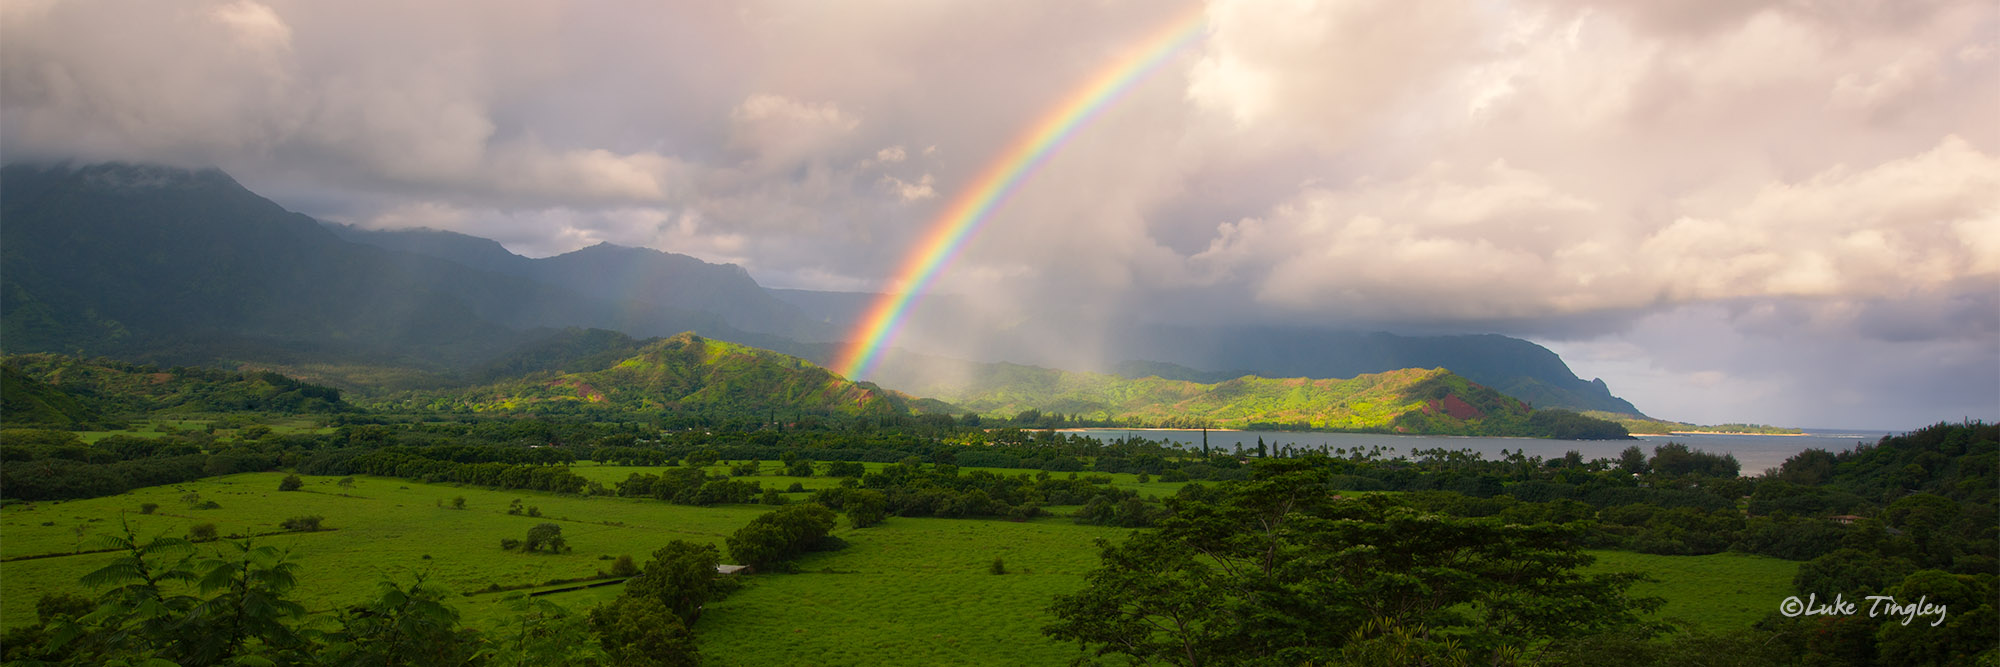 Hanalei,Hanalei Overlook,Kauai,Princeville, Rainbow, Hawaii